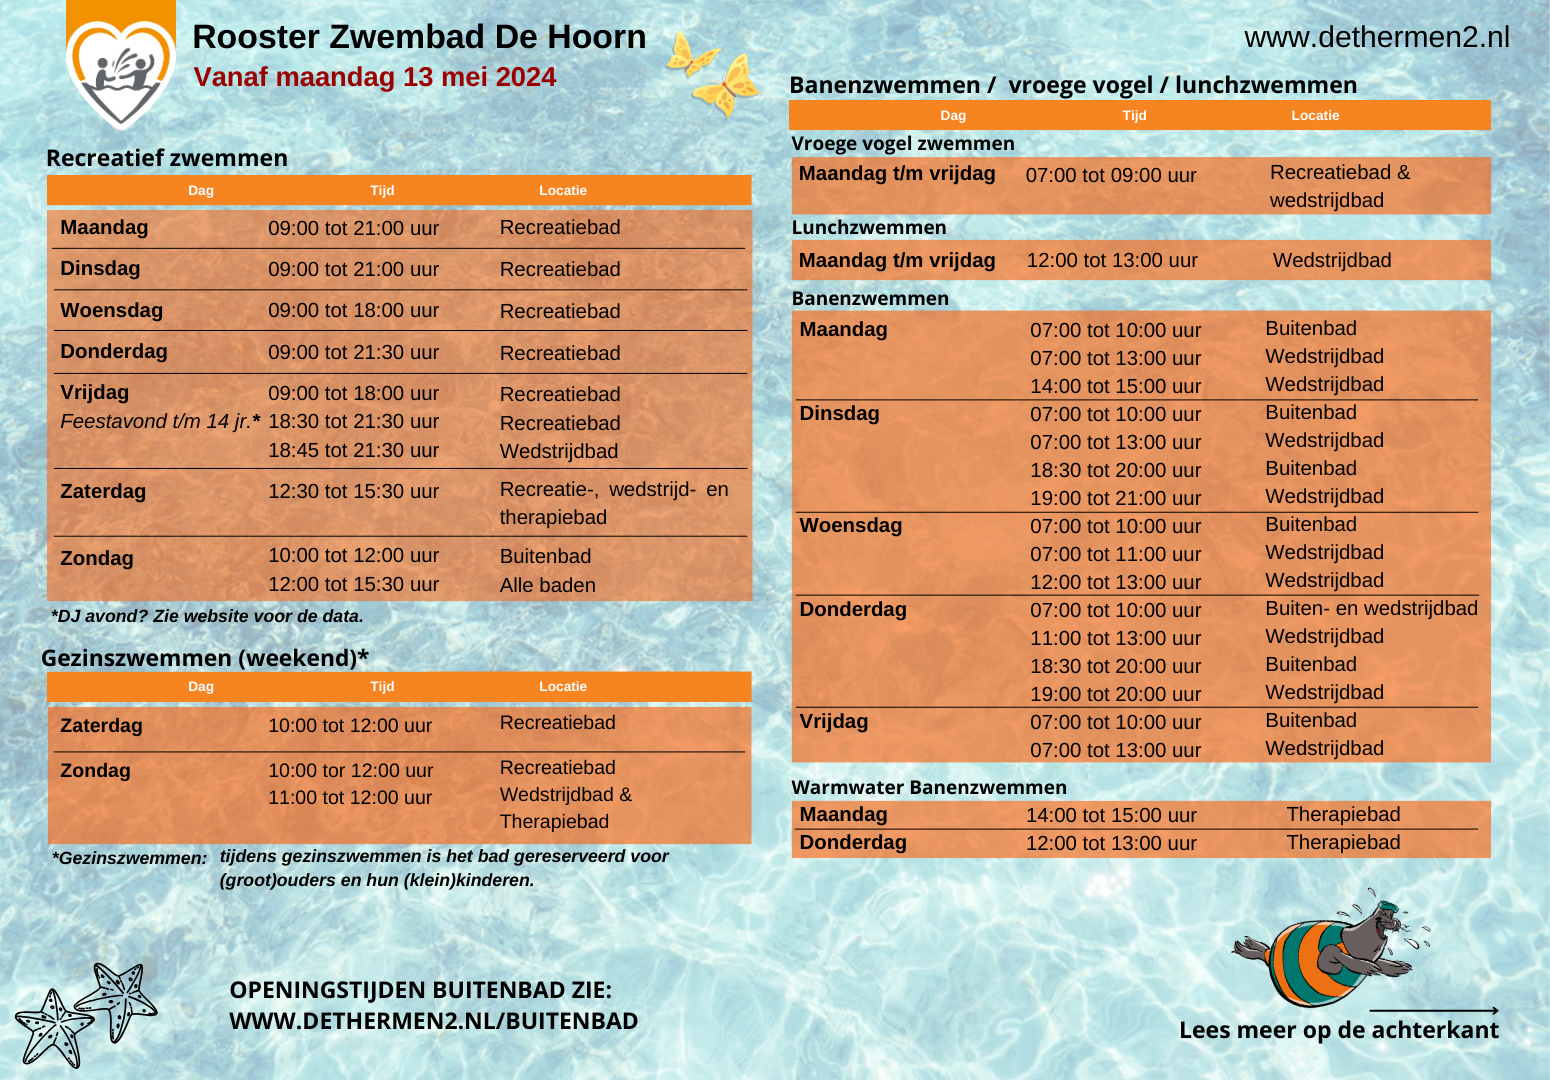 Reguliere rooster zwembad De Hoorn vanaf 13 mei 2024 DEEL 1-DEF.png